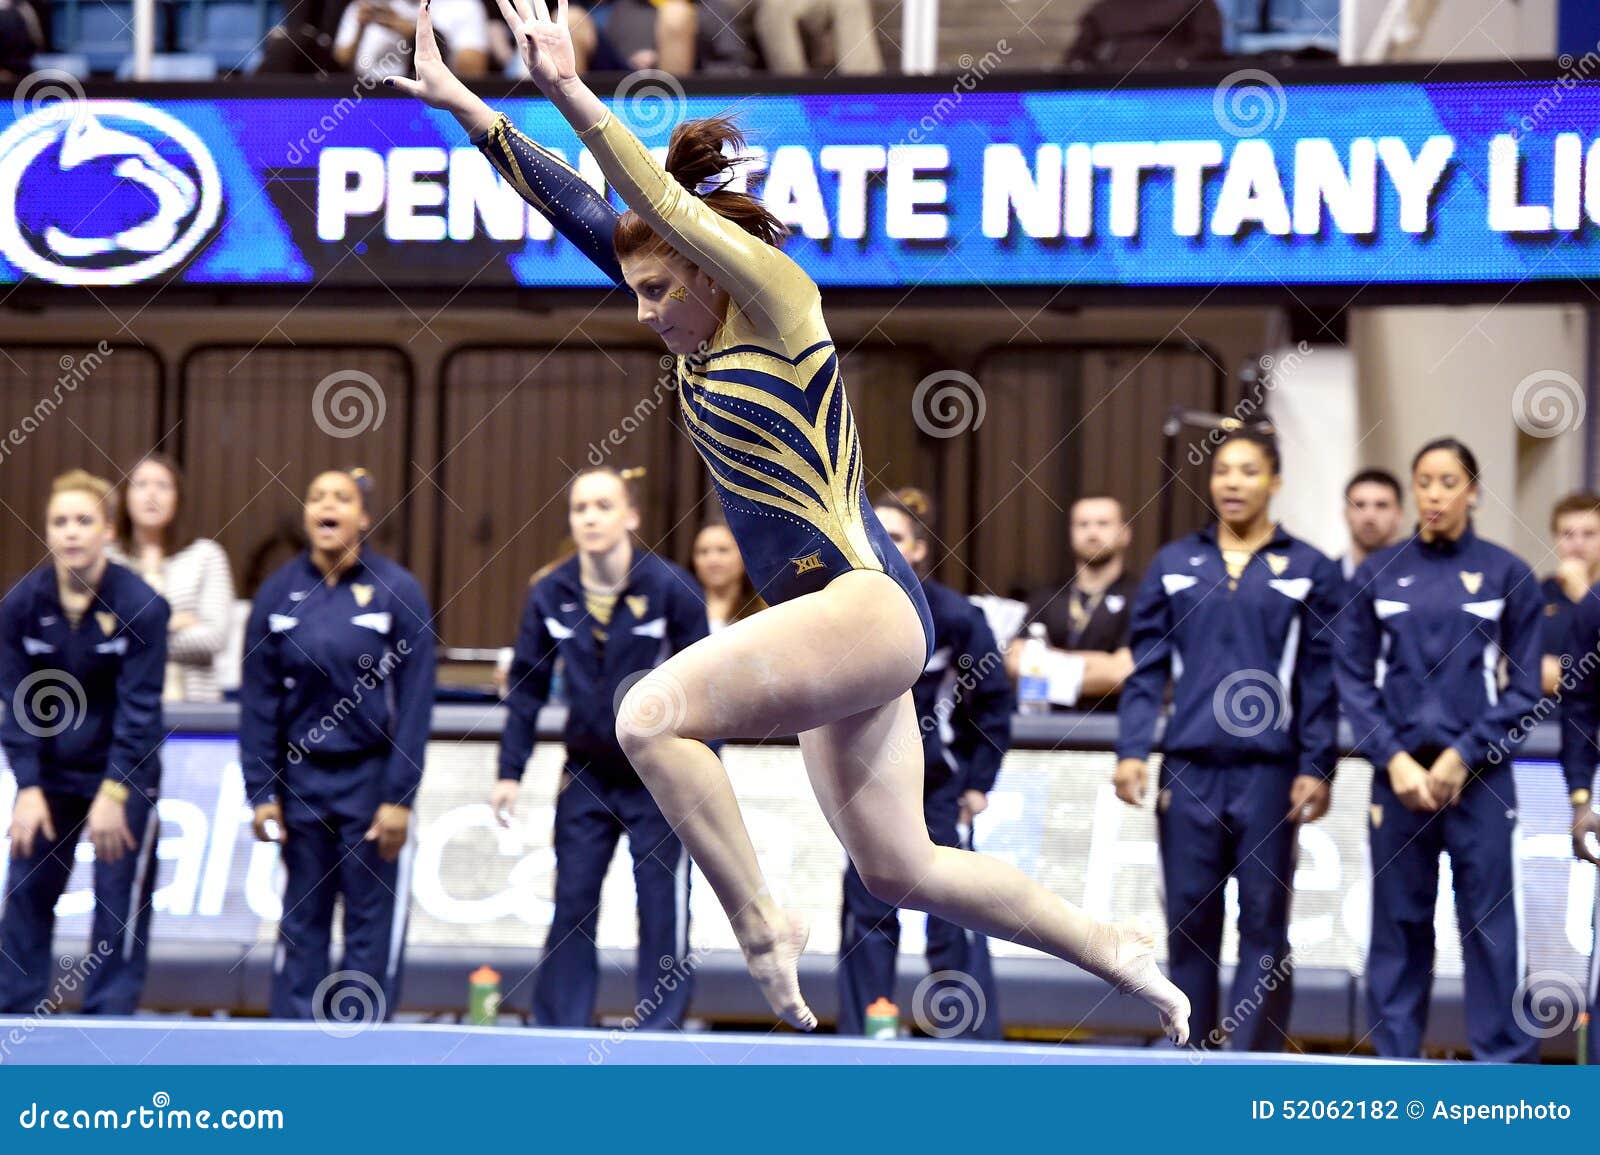 2015 NCAA-Gymnastik - WVU-Pennzustand. MORGANTOWN, WV - 8. MÄRZ: WVU-Turner Nicolette Swoboda konkurriert in der Bodenübung während eines Doppeltreffens am 8. März 2015 in Morgantown, WV